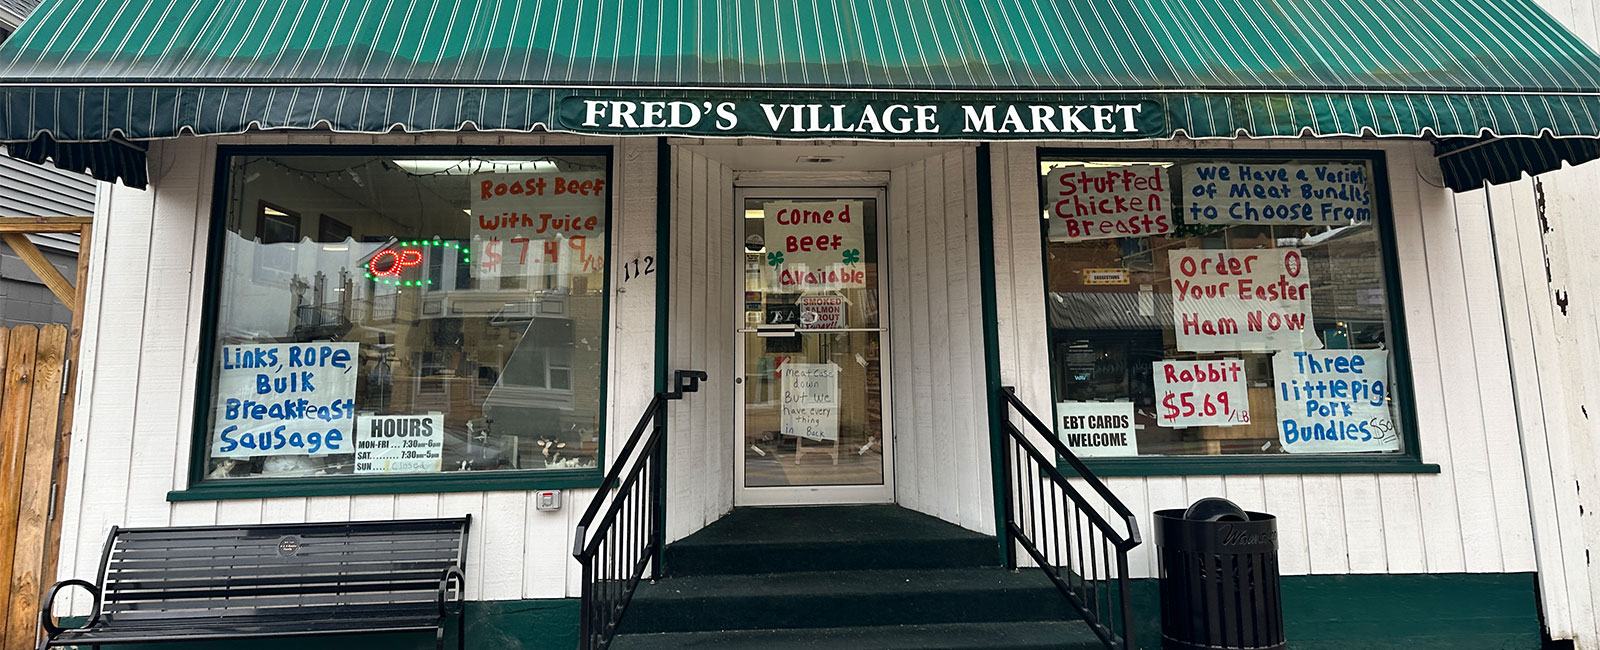 Fred's Village Market